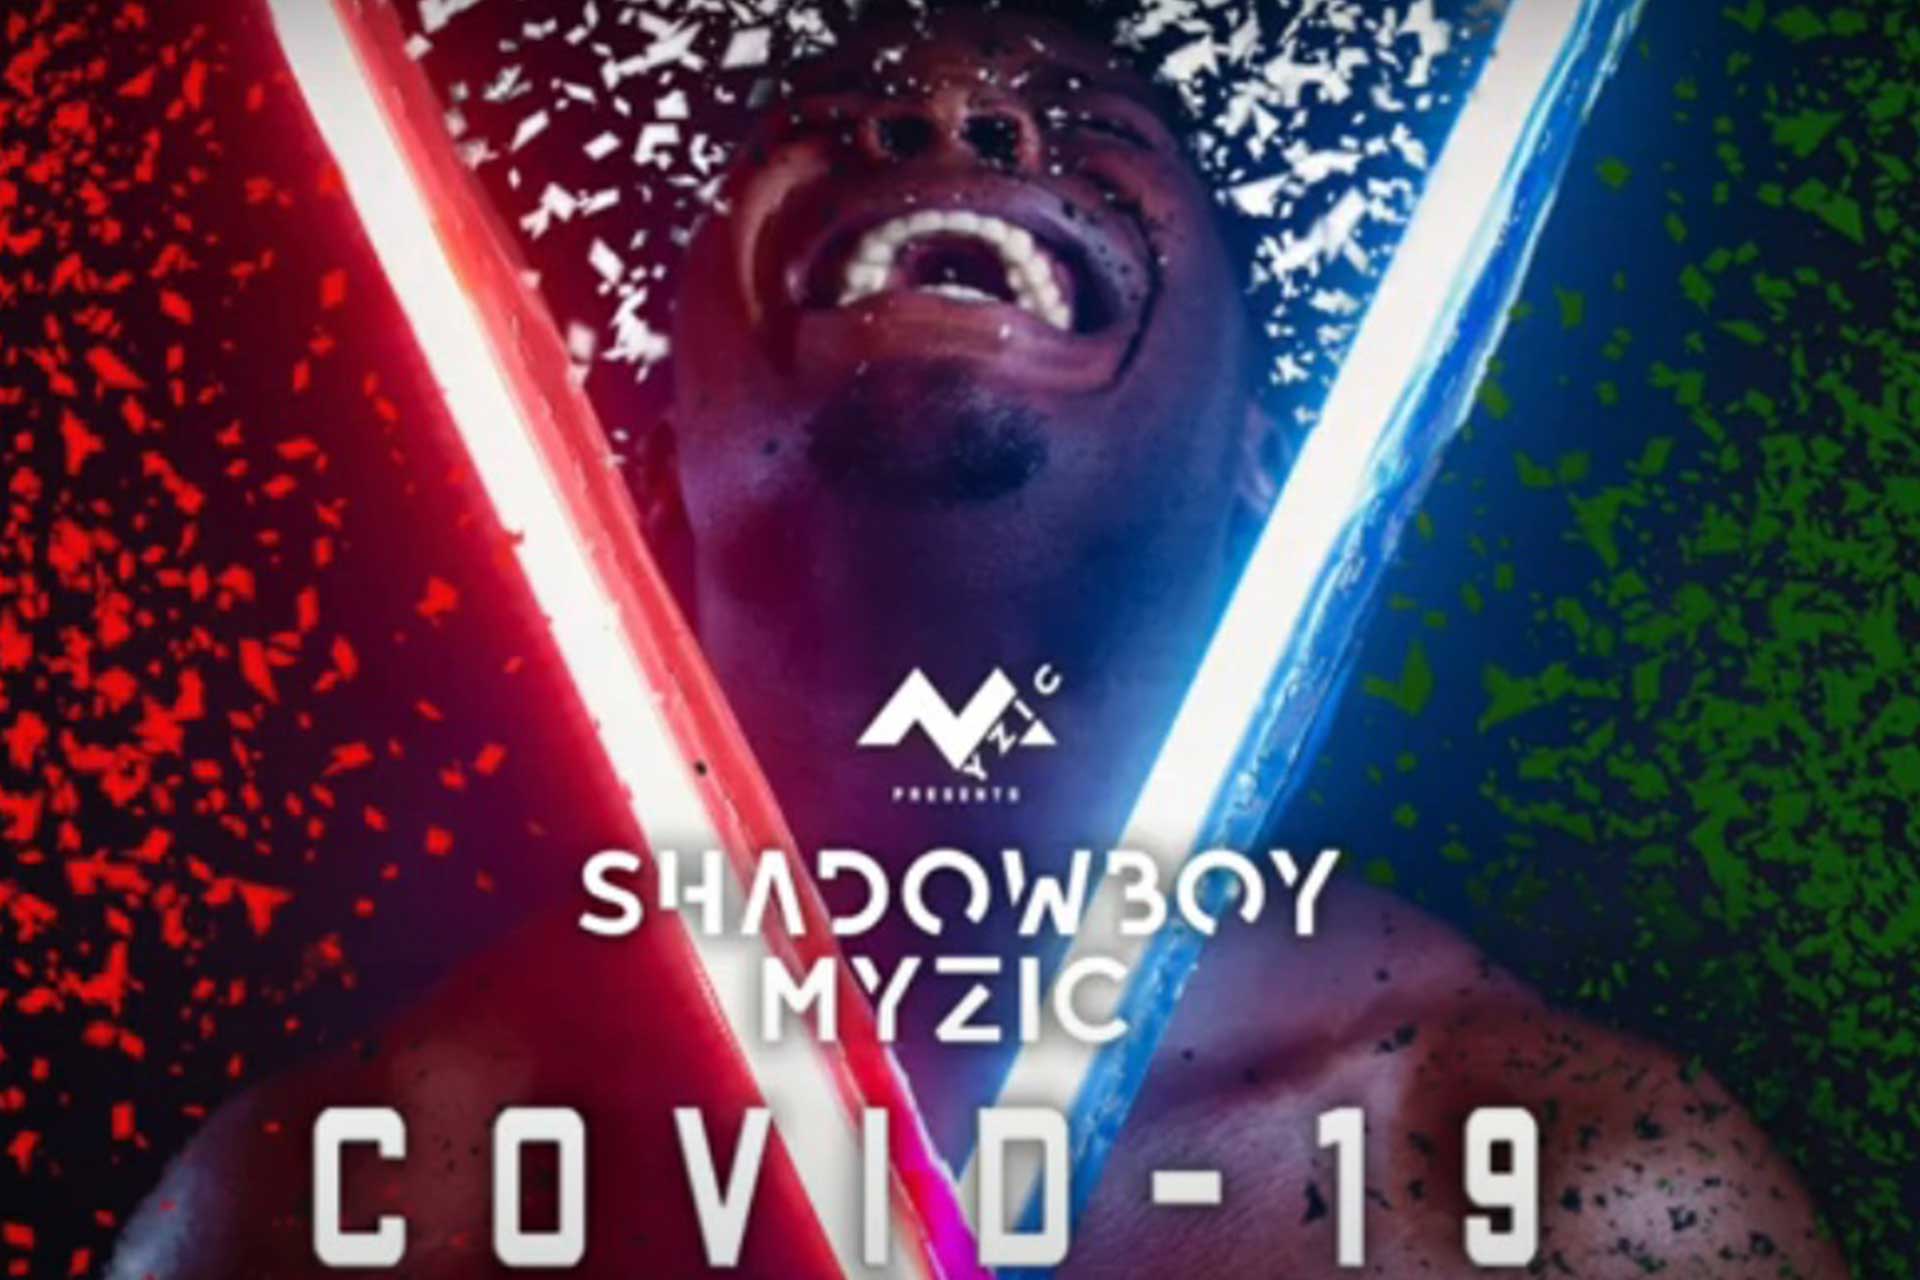 Shadowboy Myzic, rapper ghanse autore di "Covid-19"